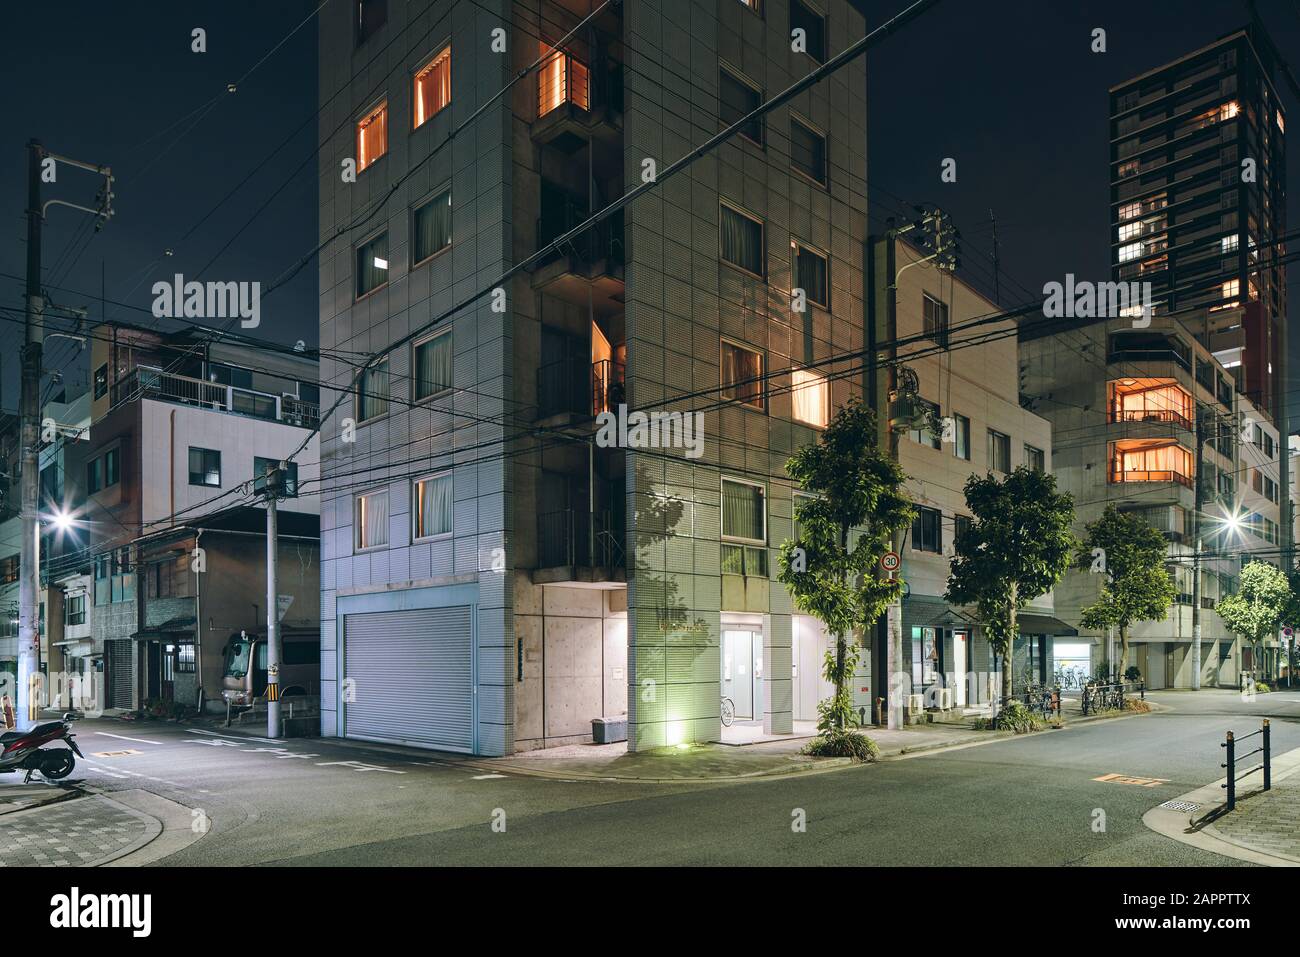 Nachtszene von Wohnblocks in der Stadt, Einzelhandelsgebäuden und modernen Bürogebäuden in der Ferne, Osaka, Japan Stockfoto